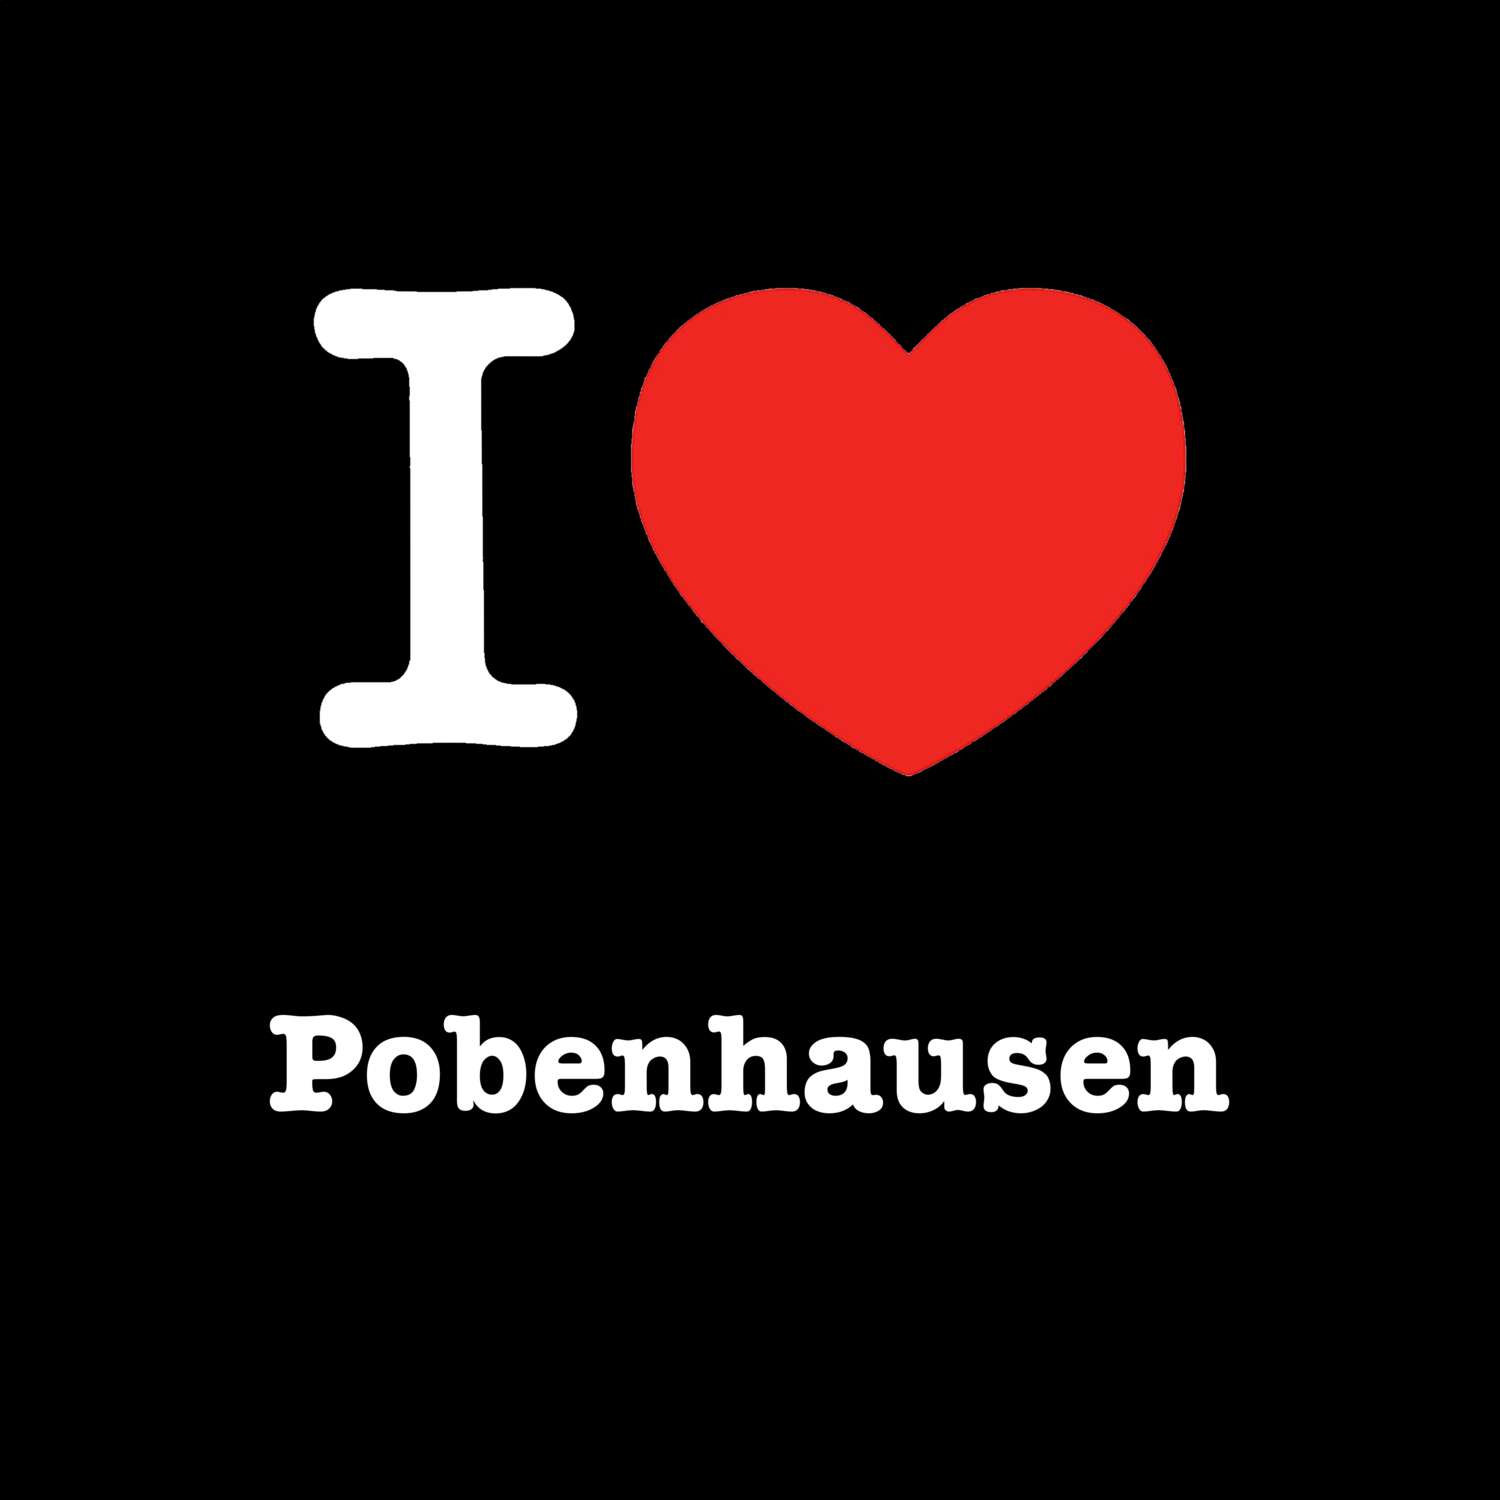 Pobenhausen T-Shirt »I love«